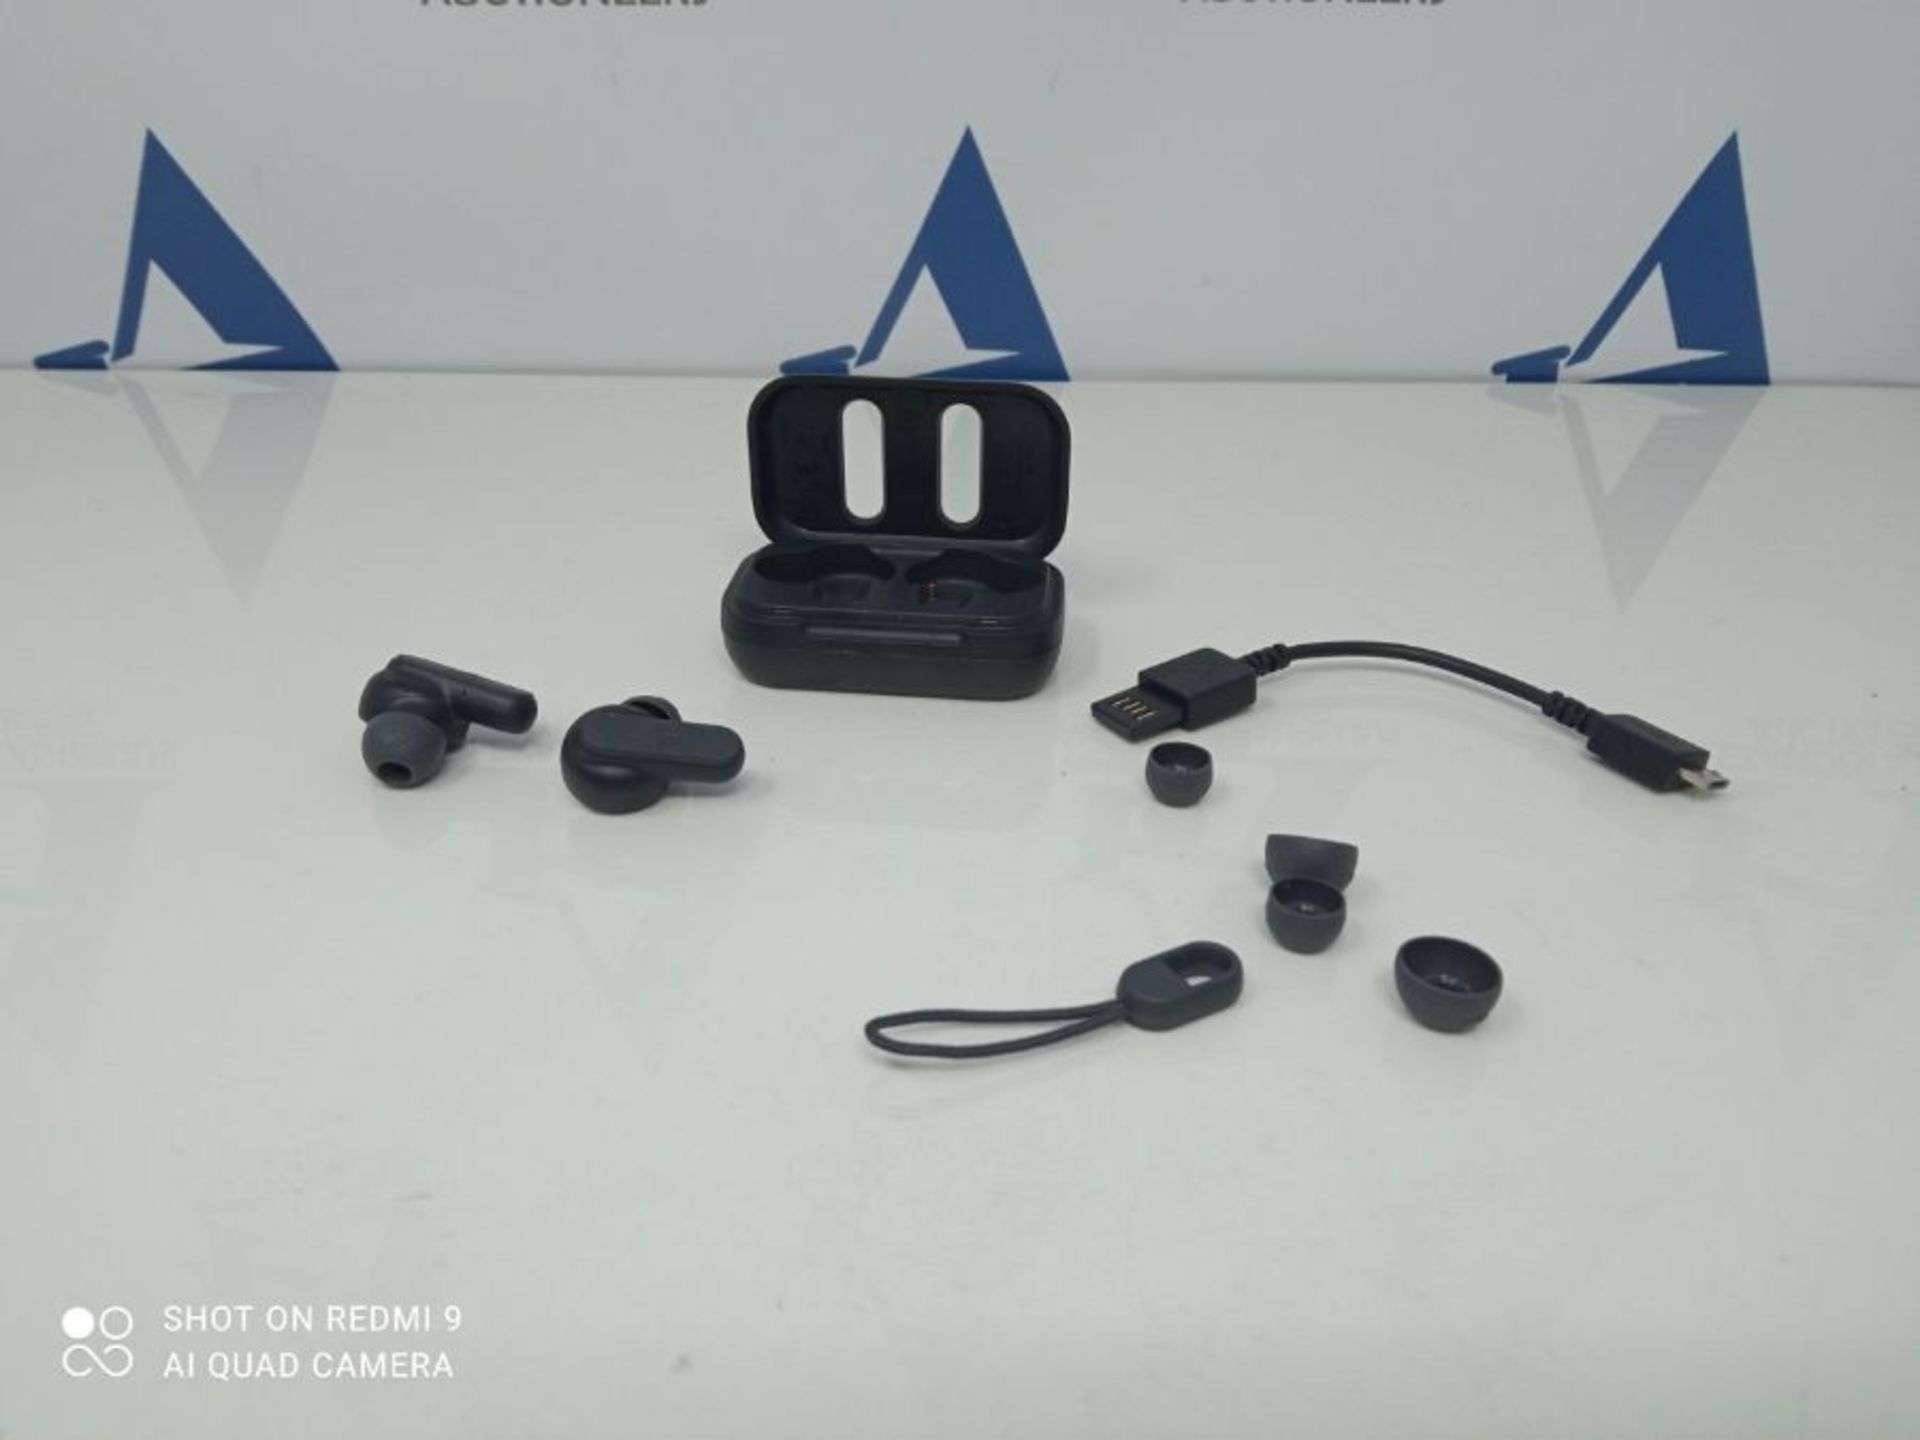 DIME - True BlackTrue Wireless Earbuds. - Image 3 of 3